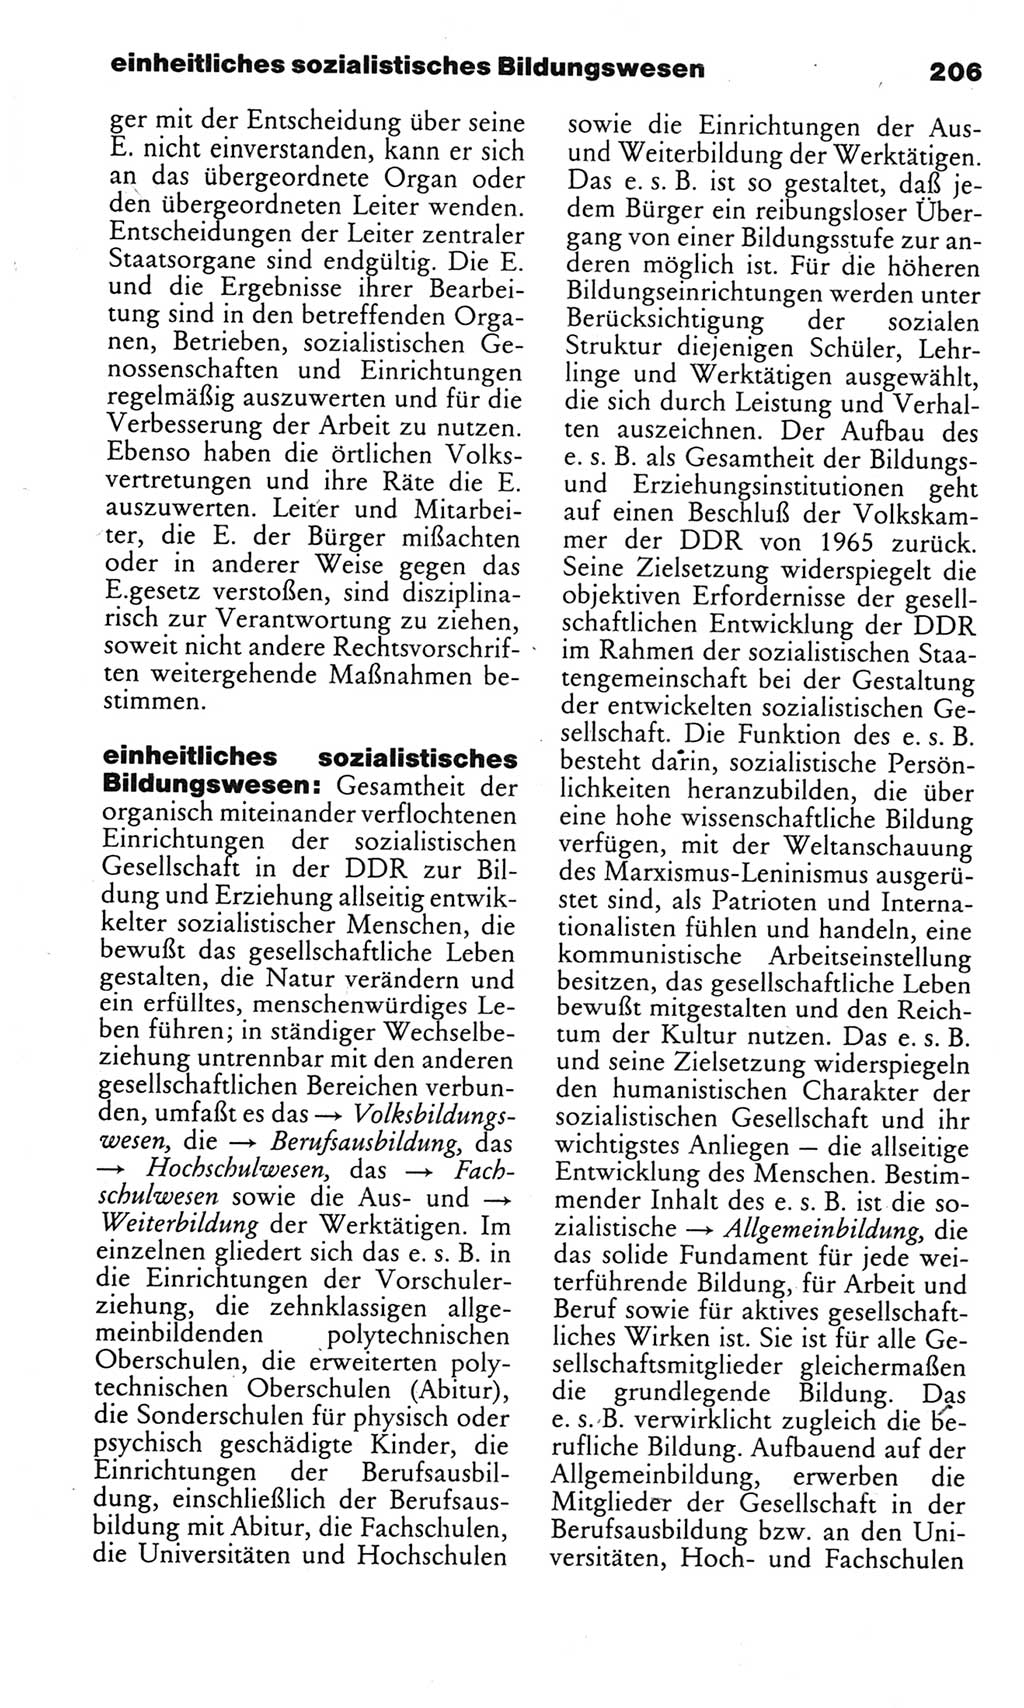 Kleines politisches Wörterbuch [Deutsche Demokratische Republik (DDR)] 1983, Seite 206 (Kl. pol. Wb. DDR 1983, S. 206)